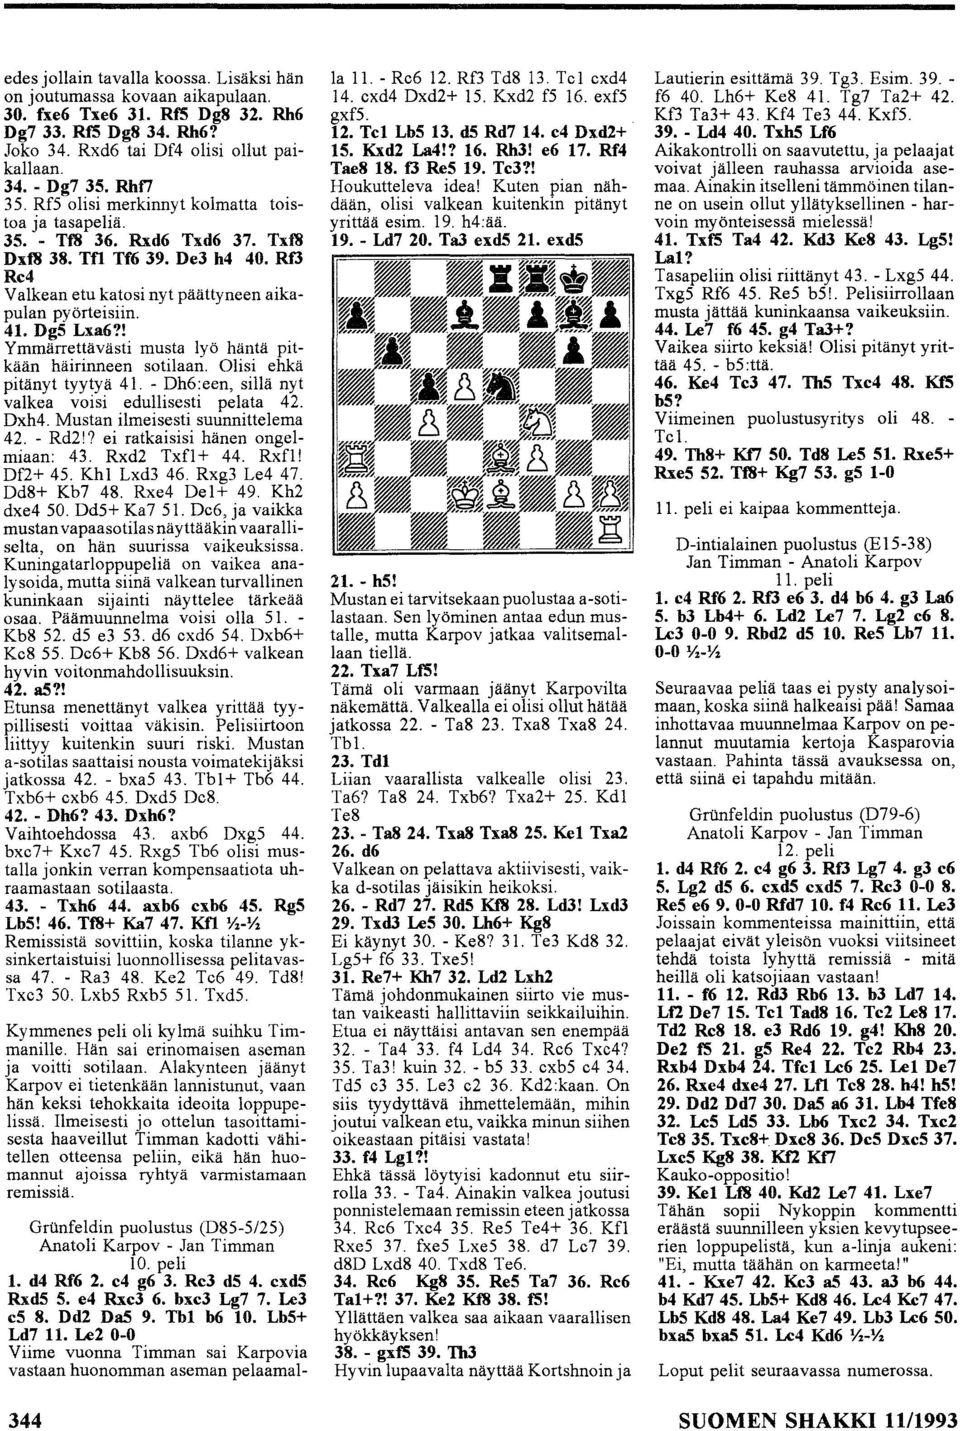 ! Ymmärrettävästi musta lyö häntä pitkään häirinneen sotilaan. Olisi ehkä pitänyt tyytyä 4. - Dh6:een, sillä nyt valkea voisi edullisesti pelata 42. Dxh4. Mustan ilmeisesti suunnittelema 42. - Rd2!